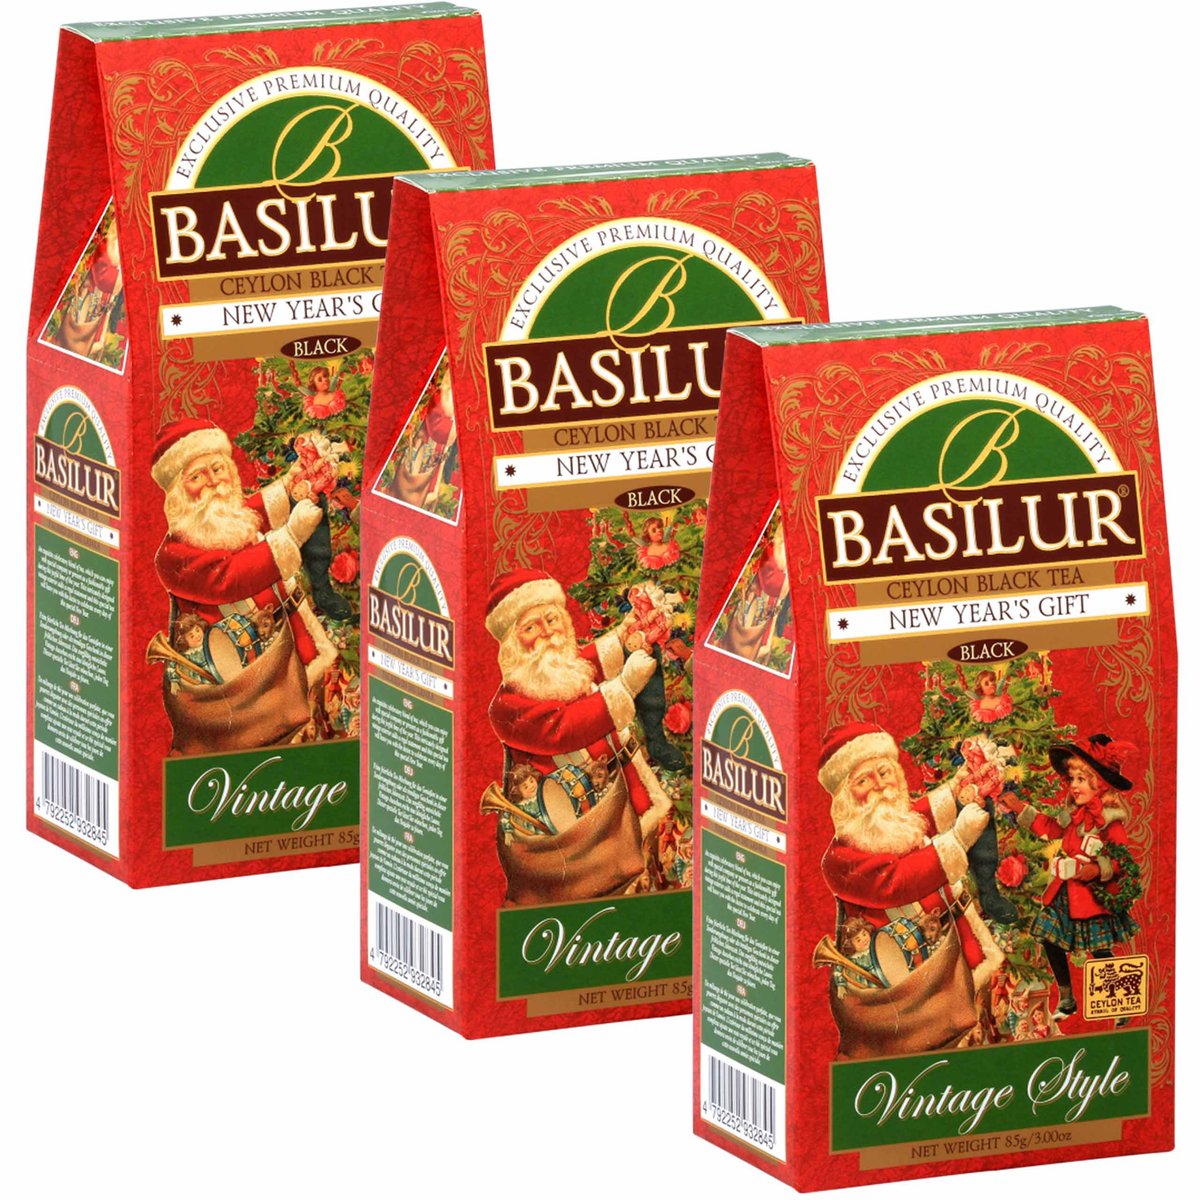 Basilur New Year'S Gift - Czarna Liściasta Herbata Z Dodatkiem Wiśni I Krokoszu Barwierskiego, 85 G X3